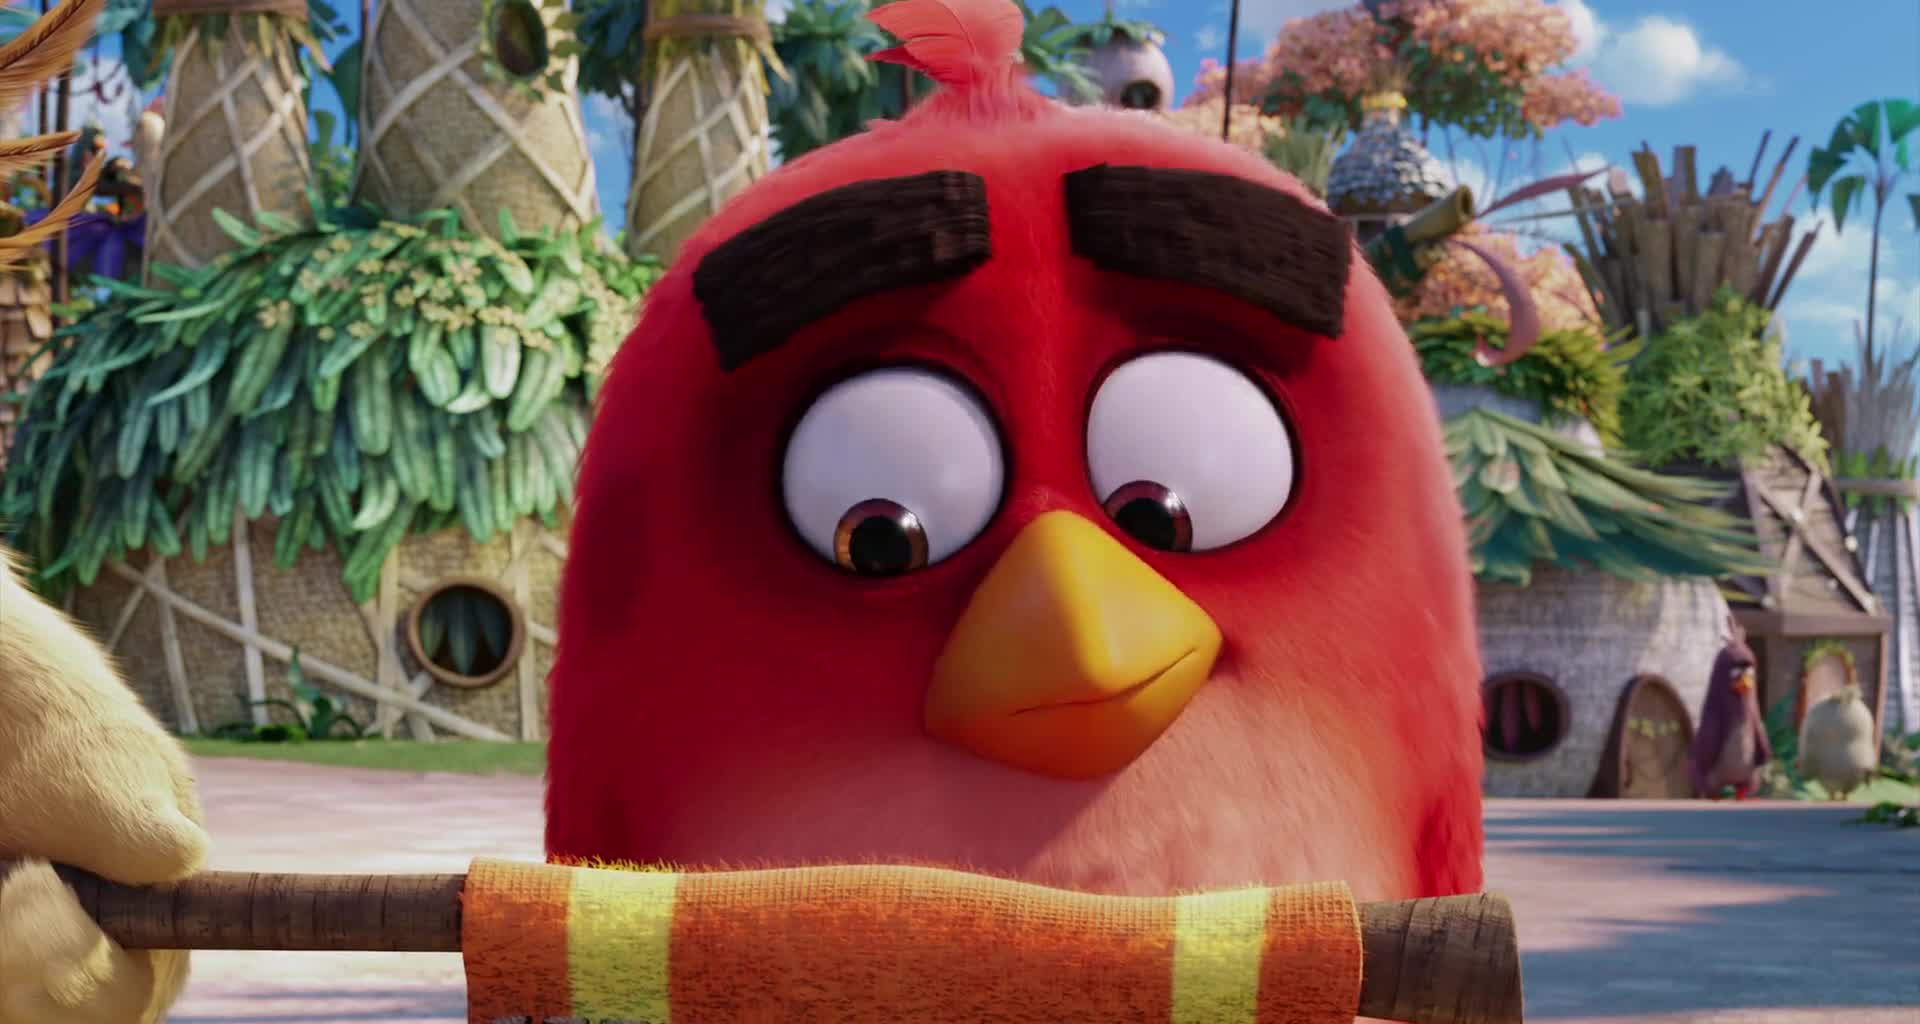 Angry Birds ve filmu cz+sk,dabing,HD mkv